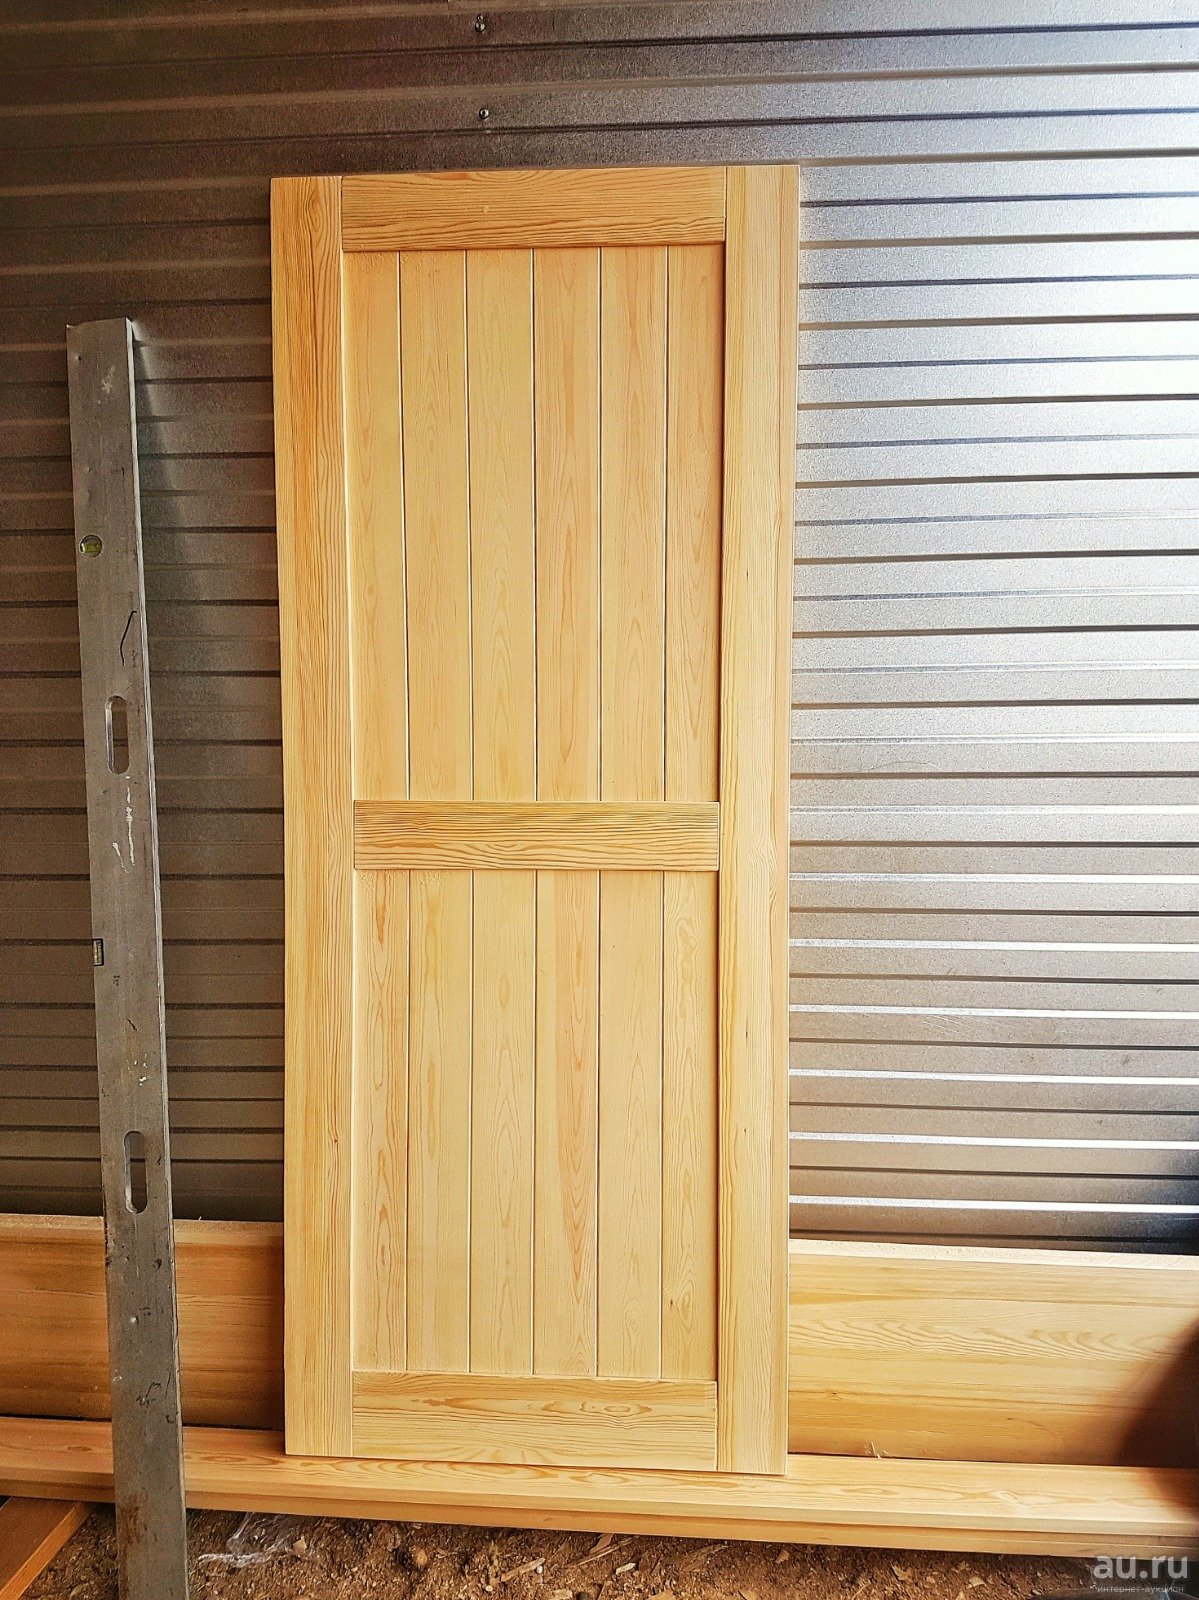 Размер двери в парилку, в том числе с коробкой вместе